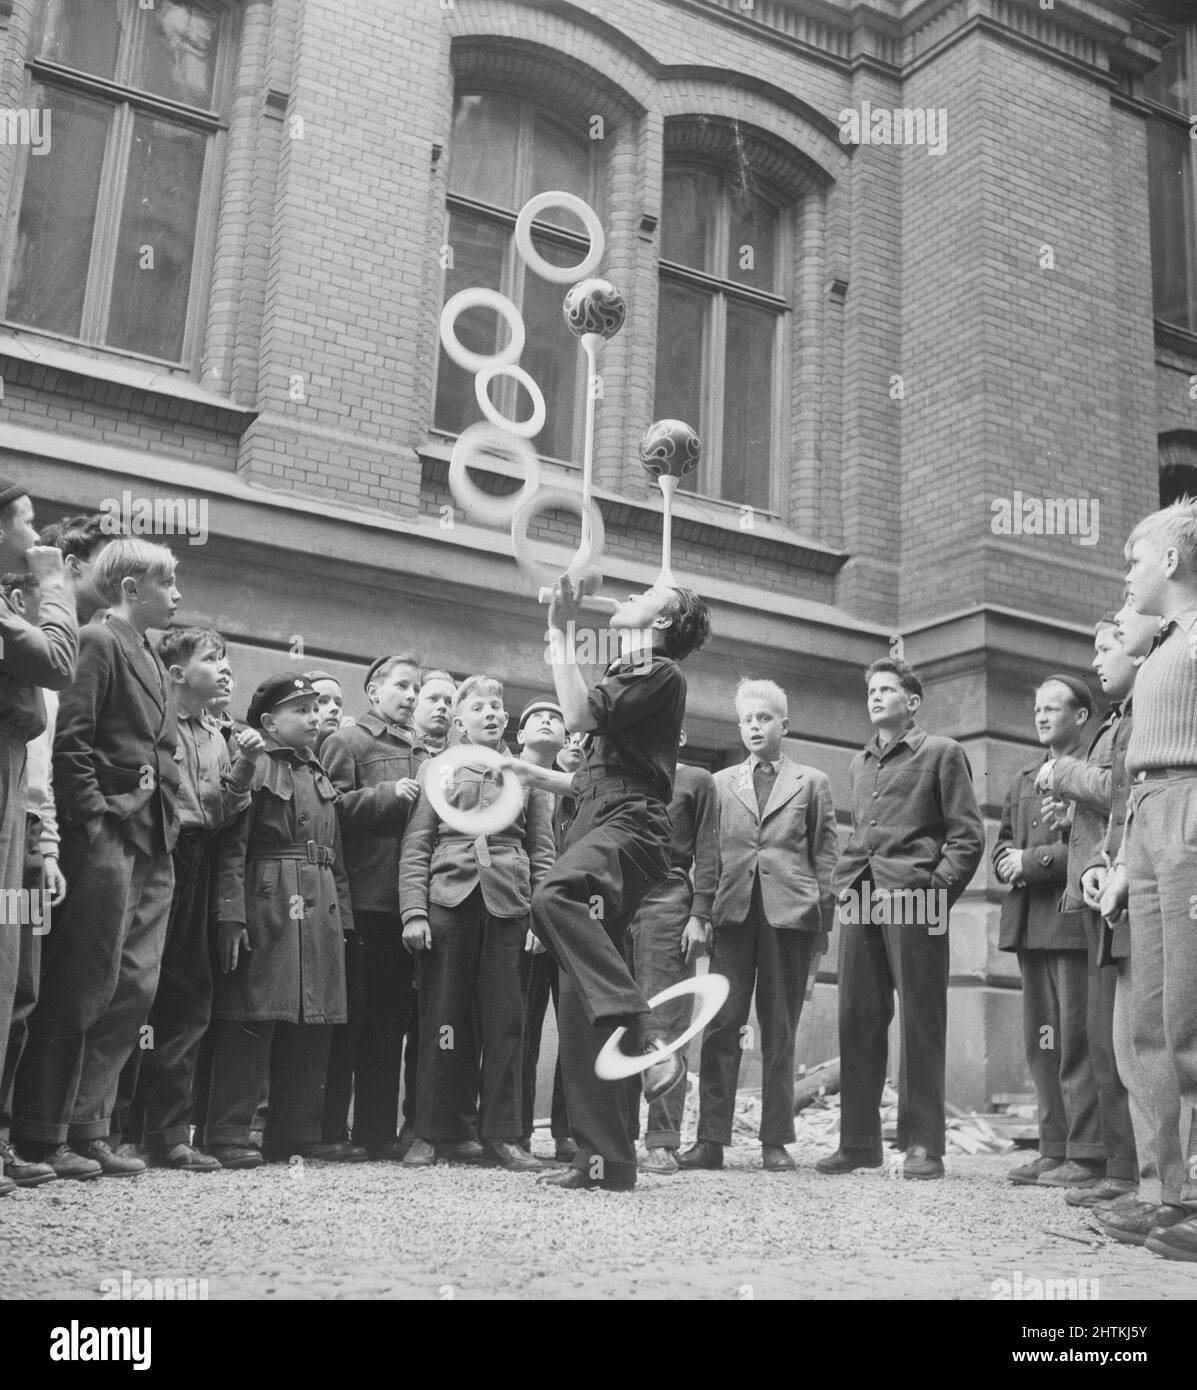 Talentierter Mann im Jahr 1950s. Der schwedische Naturfilmregisseur Jan Lindblad, 1932-1987, war ebenfalls ein talentierter Jongleur und akrobatin und wird hier beim Balancieren von Jonglieren und Balancieren von Bällen gleichzeitig gesehen, während er nur auf einem Bein stand. Schweden 1955 Kristoffersson Ref. BU91-3 Stockfoto